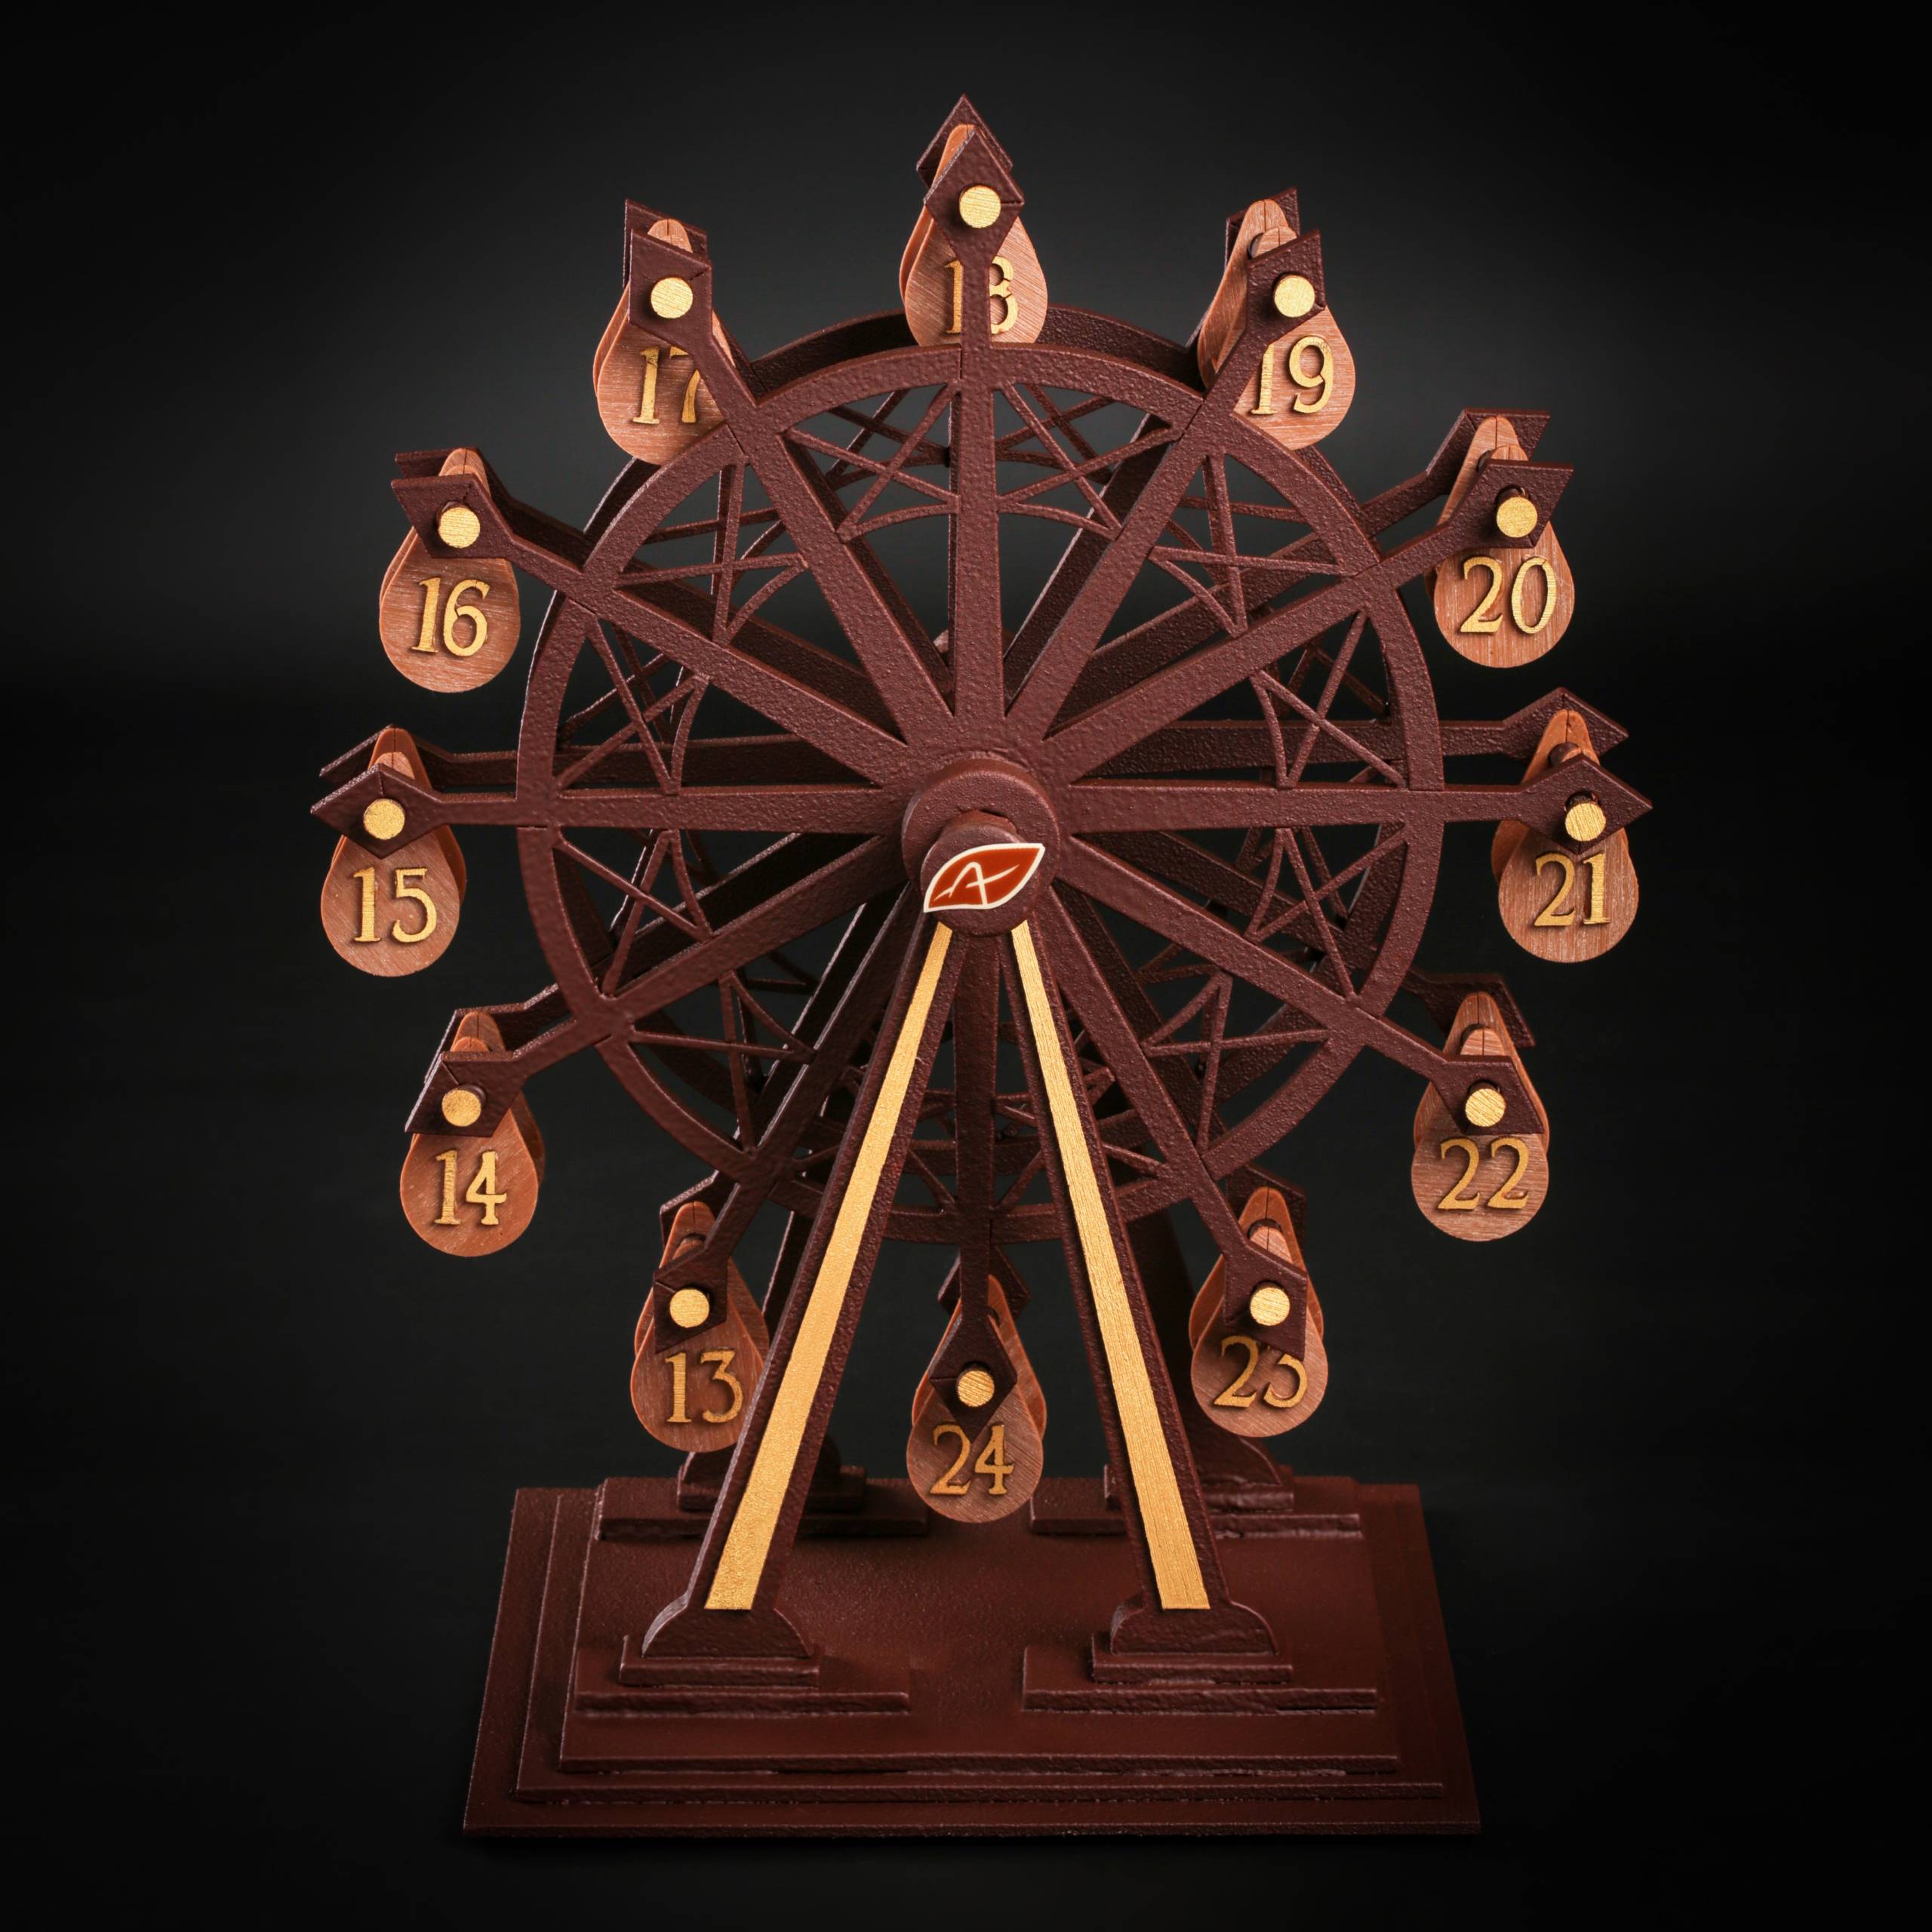 La grande roue de l’Avent : un concept original du calendrier de l’Avent par Patrick Agnellet